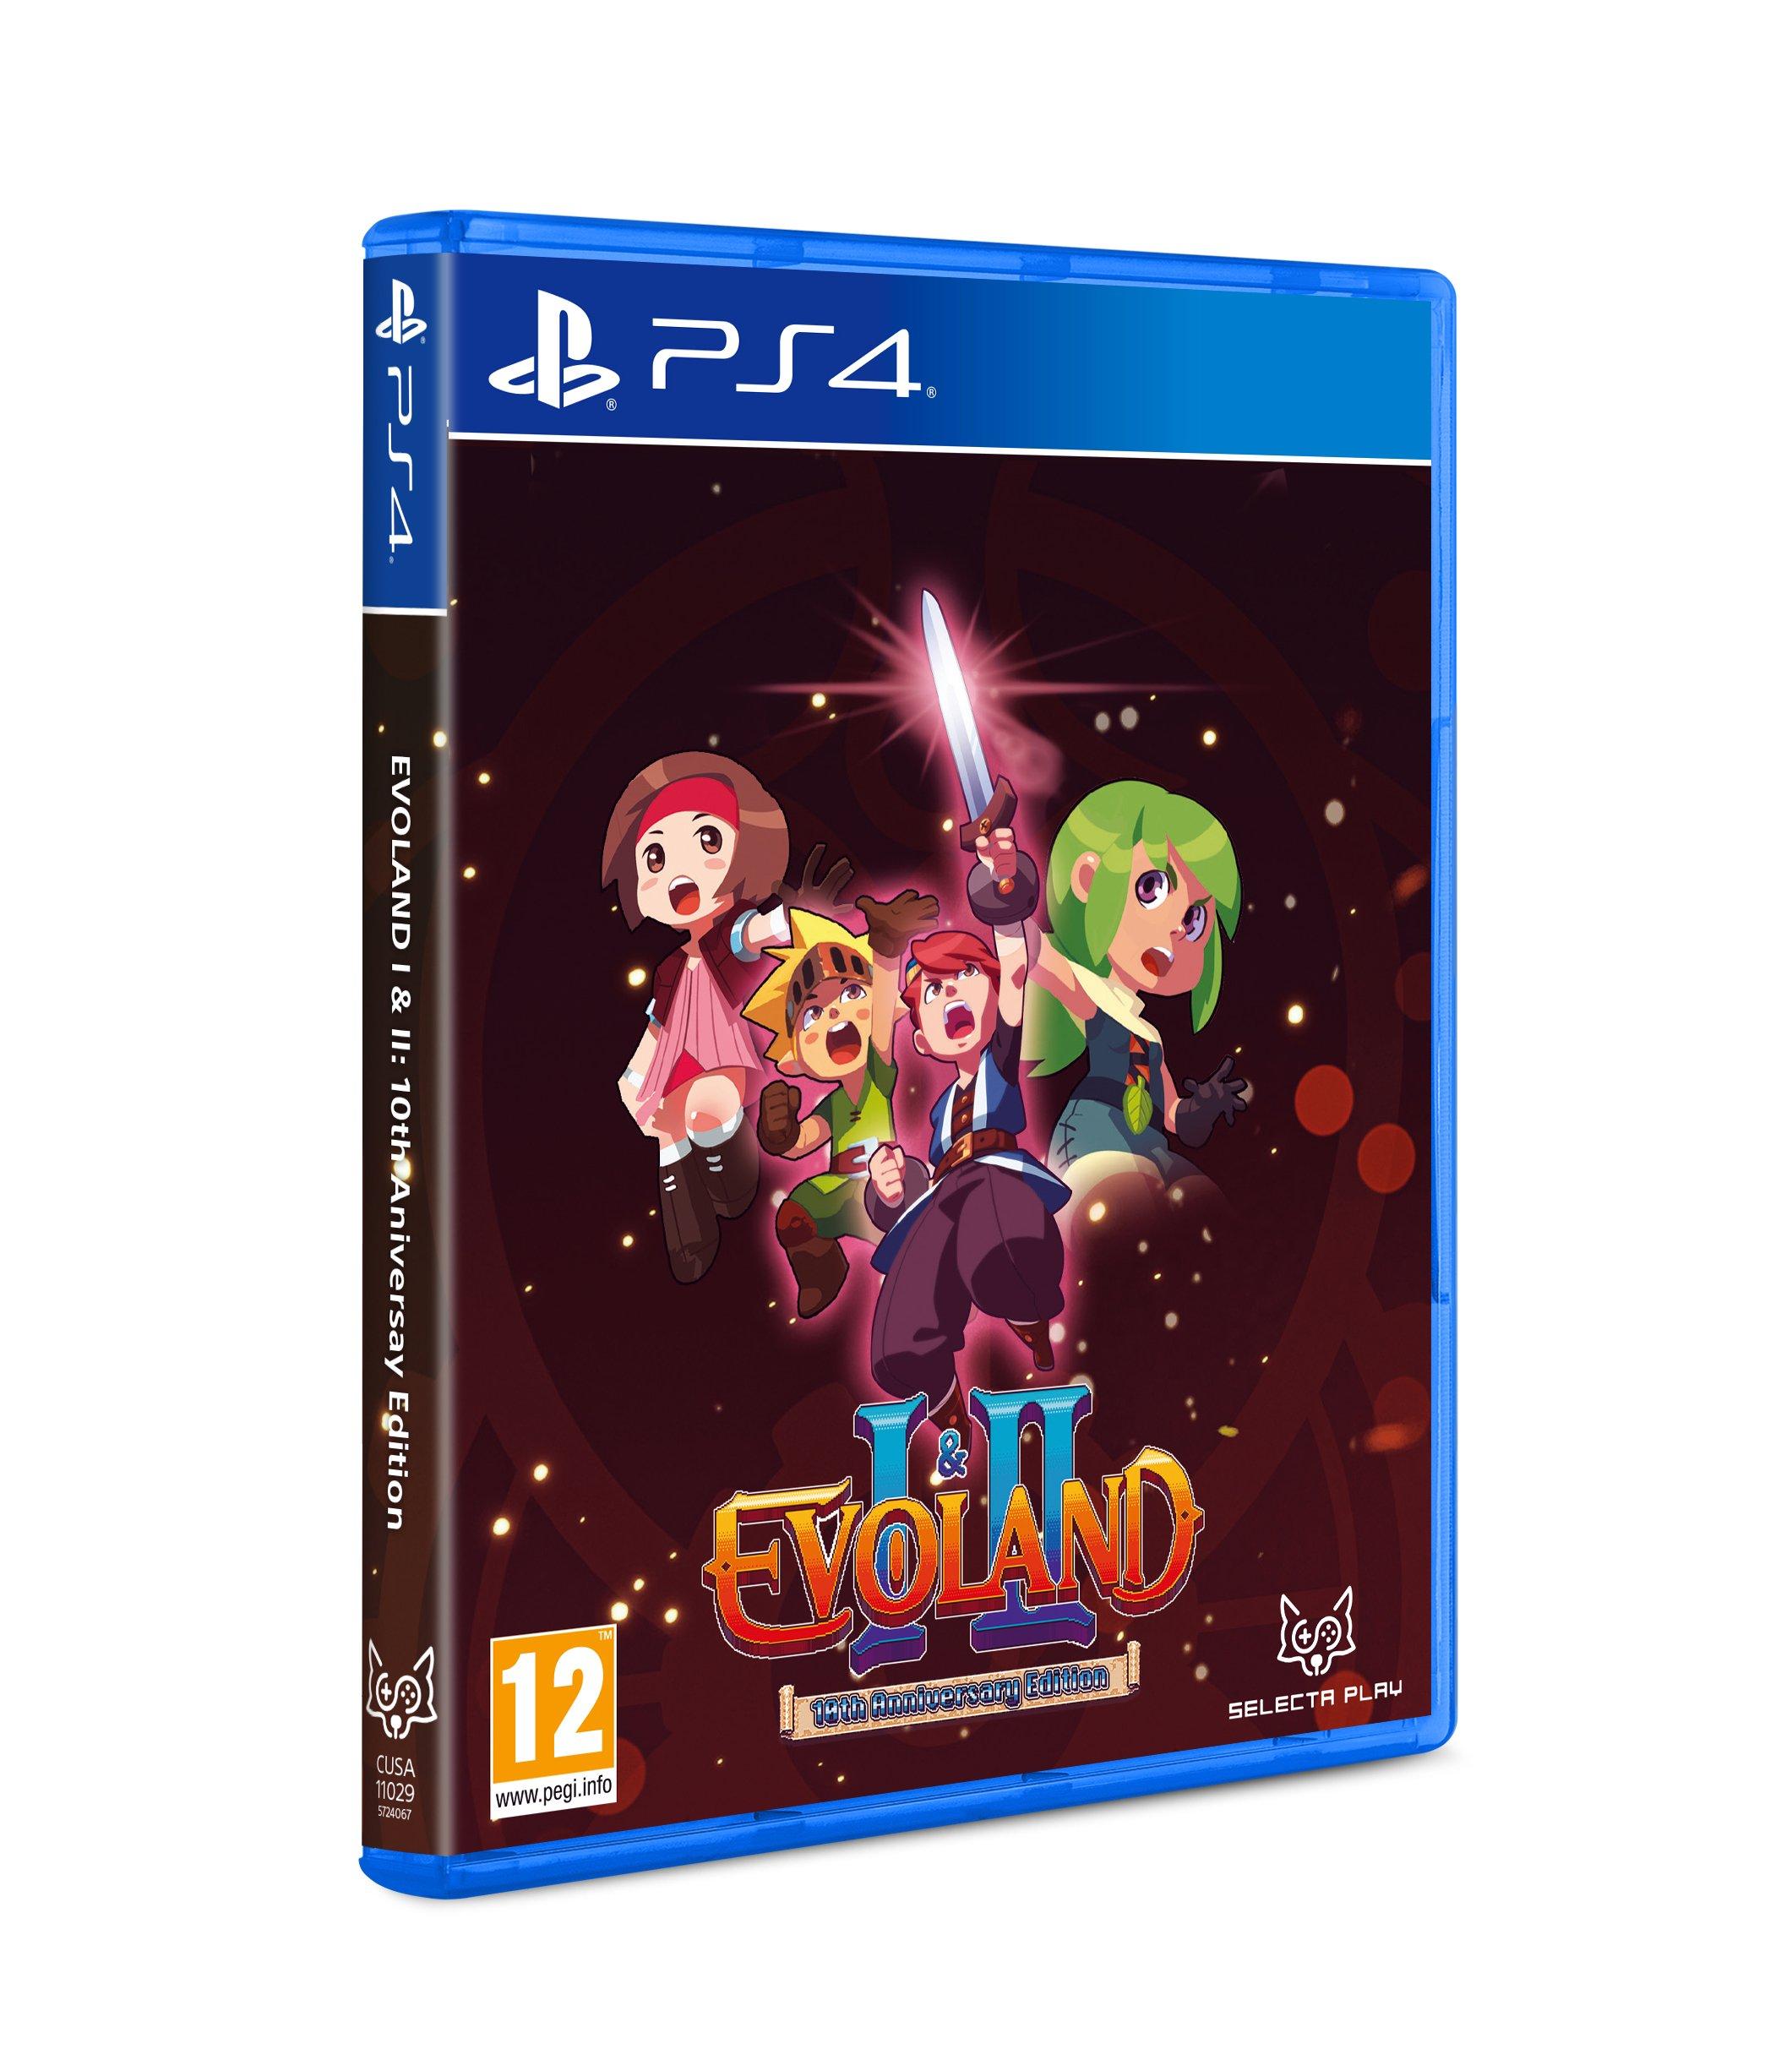 Evoland 1 & 2 - 10th Anniversary Edition - PS4